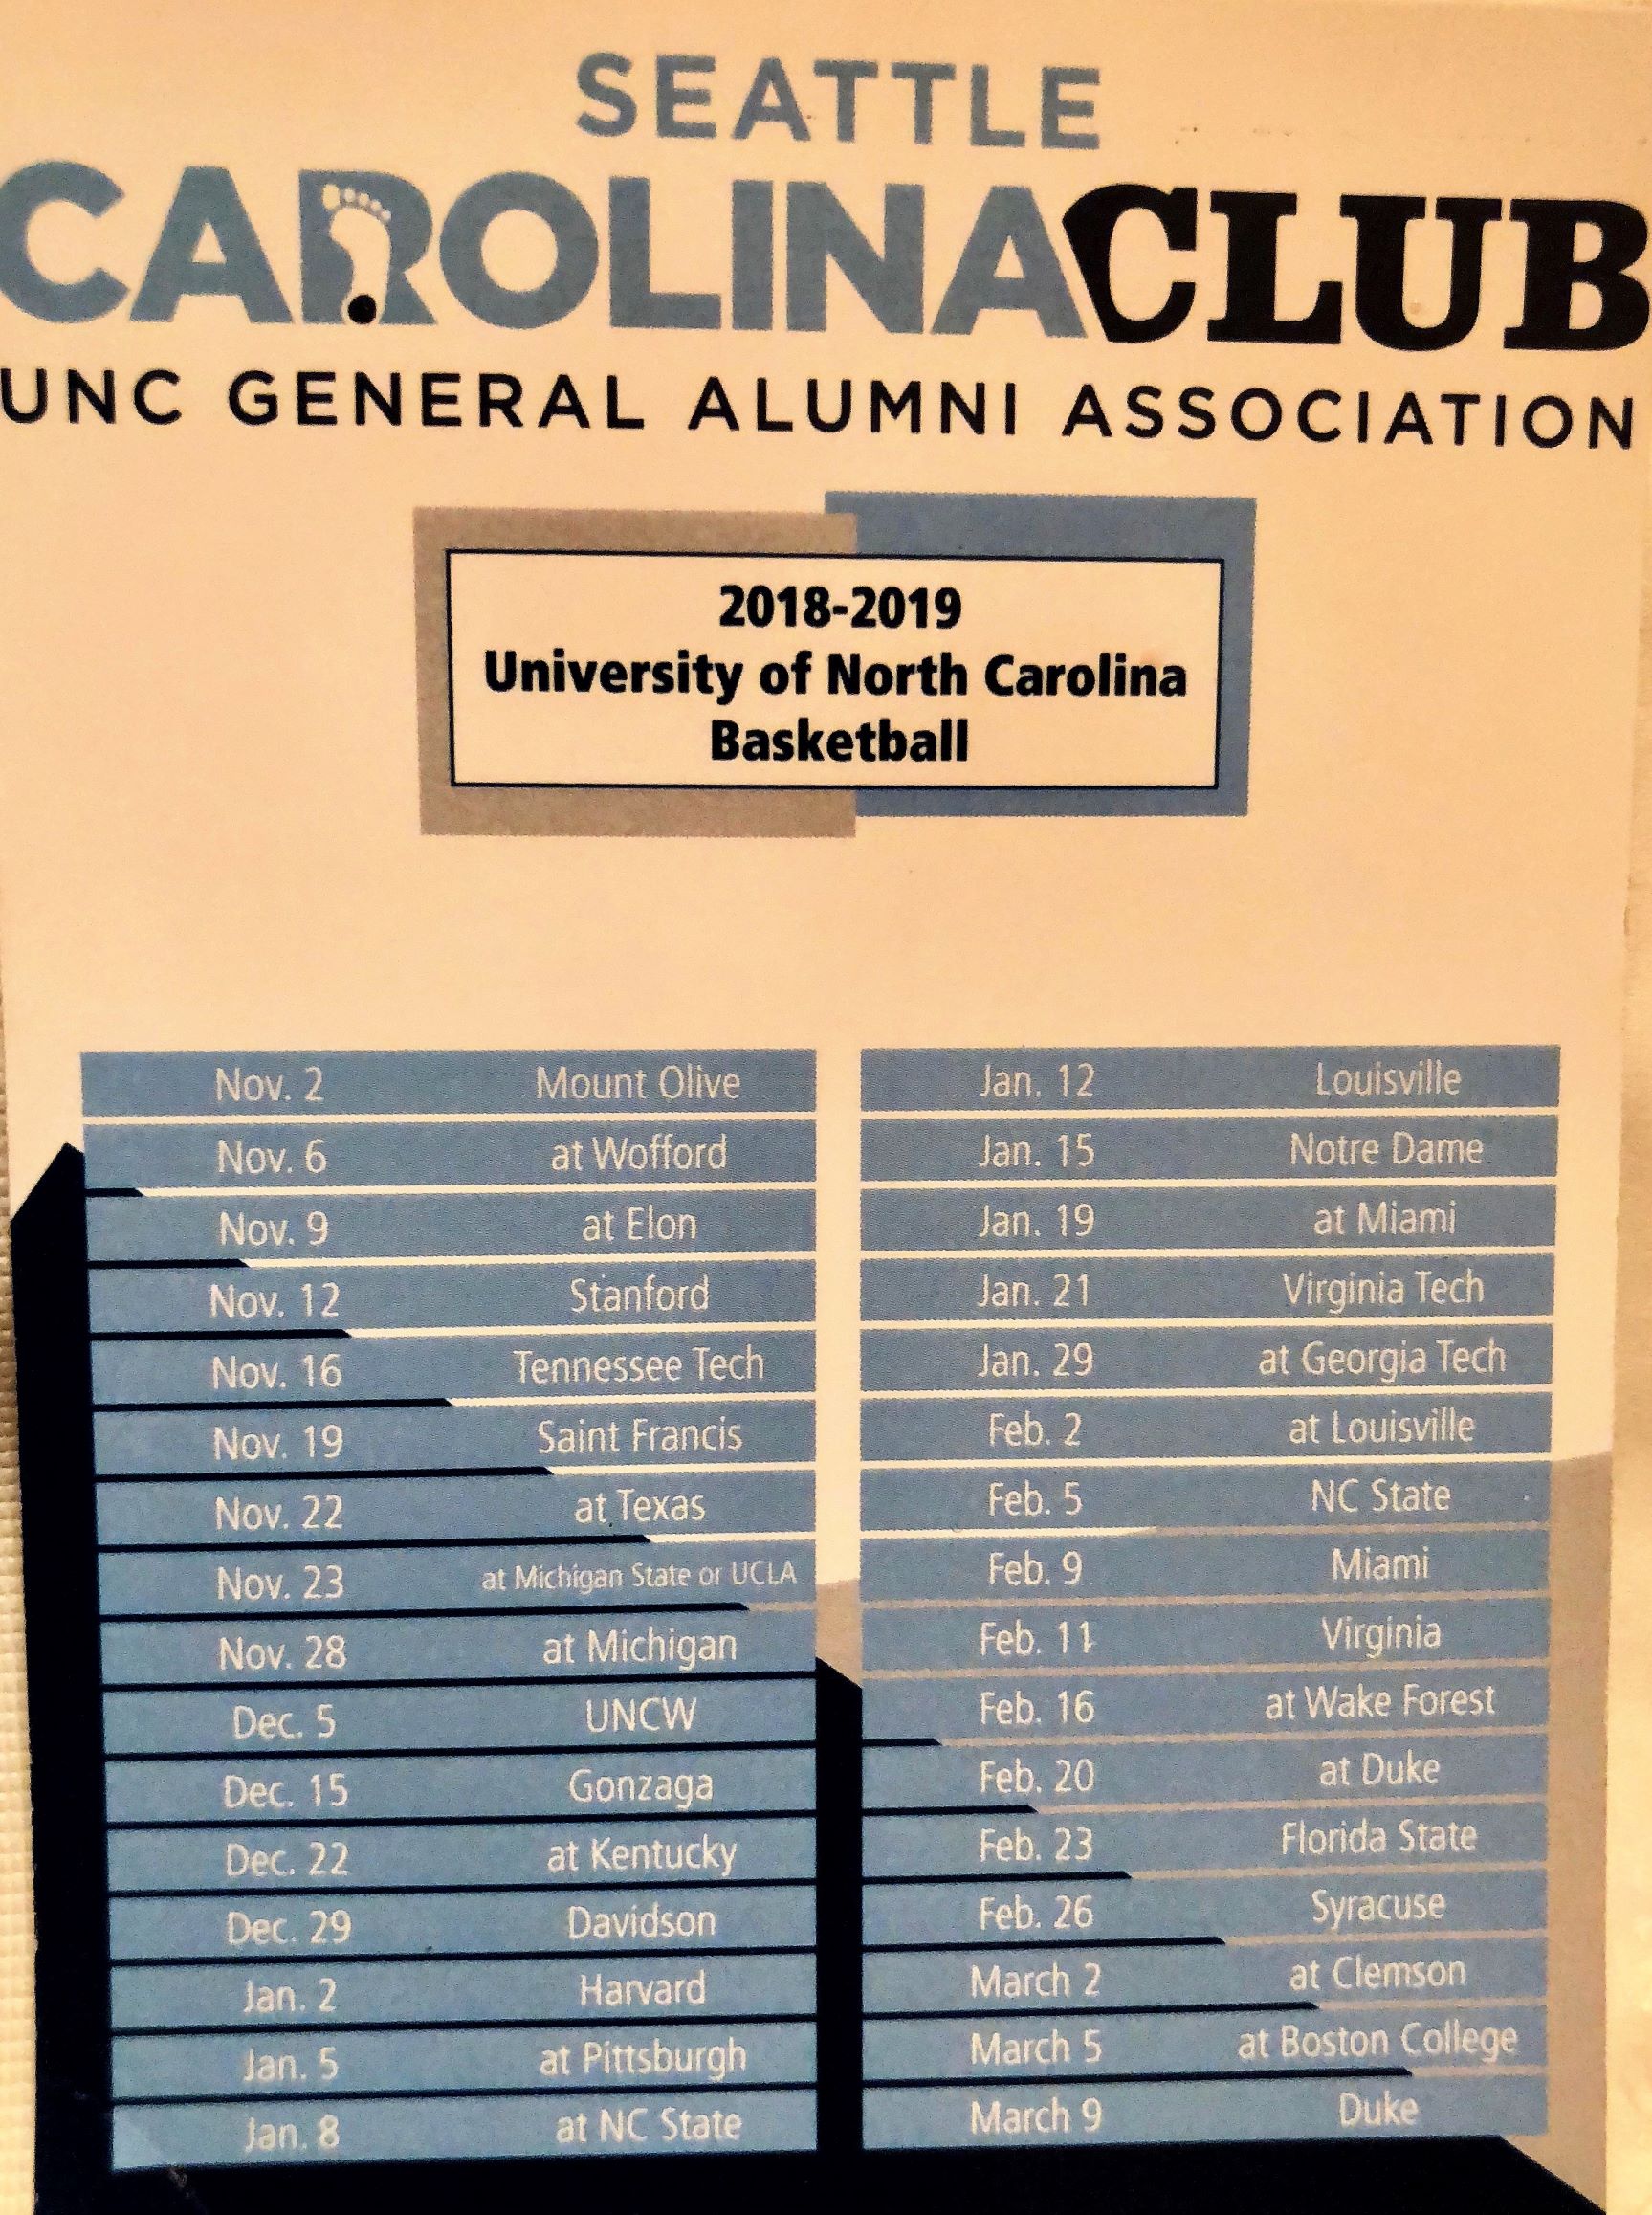 2018-19 tar heel basketball schedule | unc general alumni association